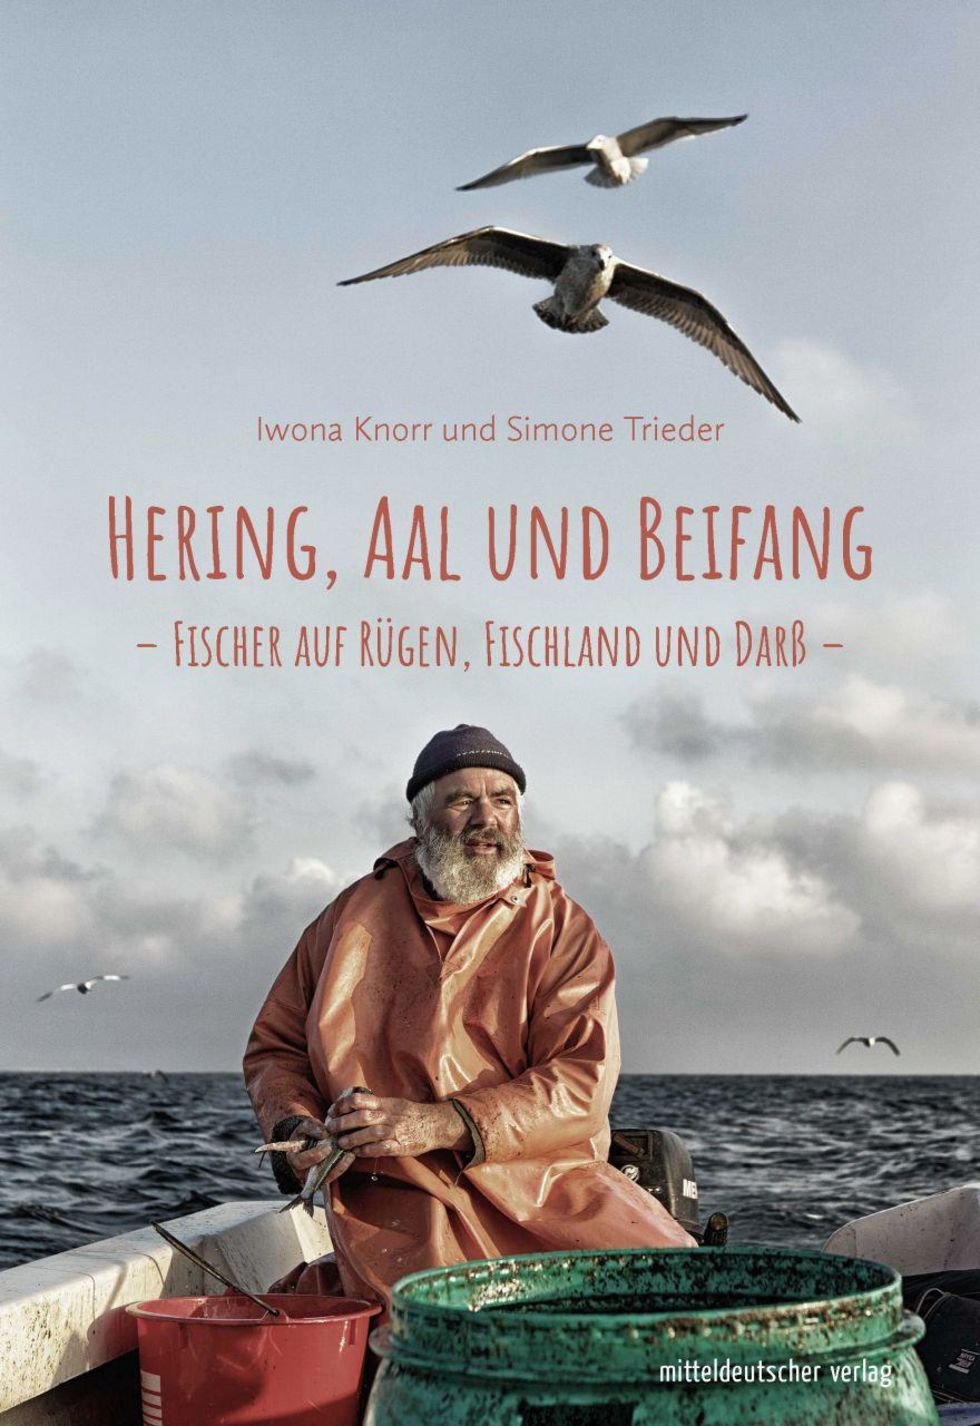 Buchcover "Hering, Aal und Beifang. Fischer auf Rügen, Fischland und Darß"